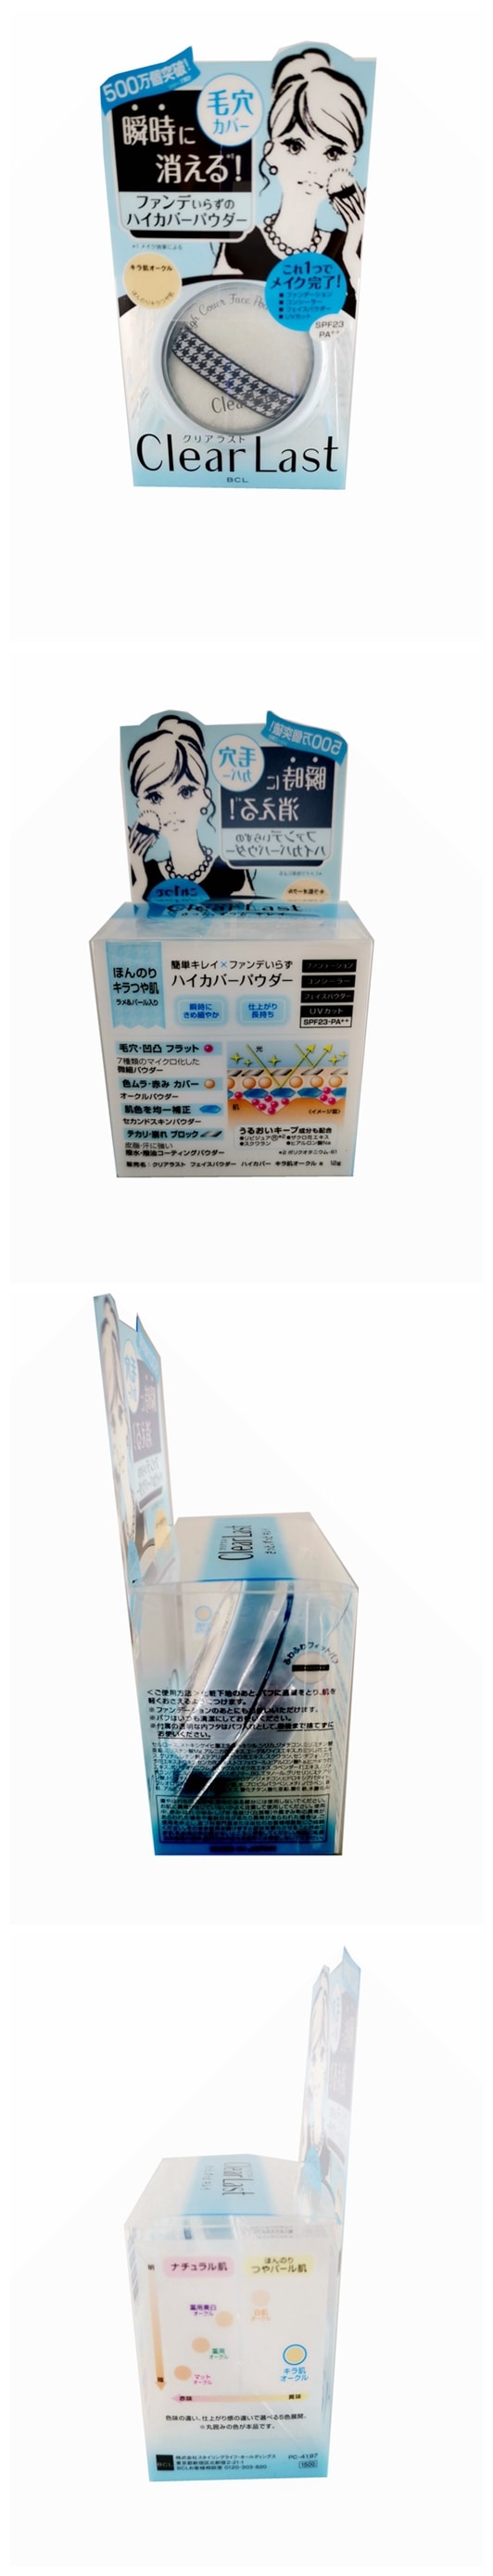 特價大處理【日本直郵】日本原廠BCL 保濕防曬遮瑕三效合一粉餅SPF23 PA++ 12g 三款選 藍色